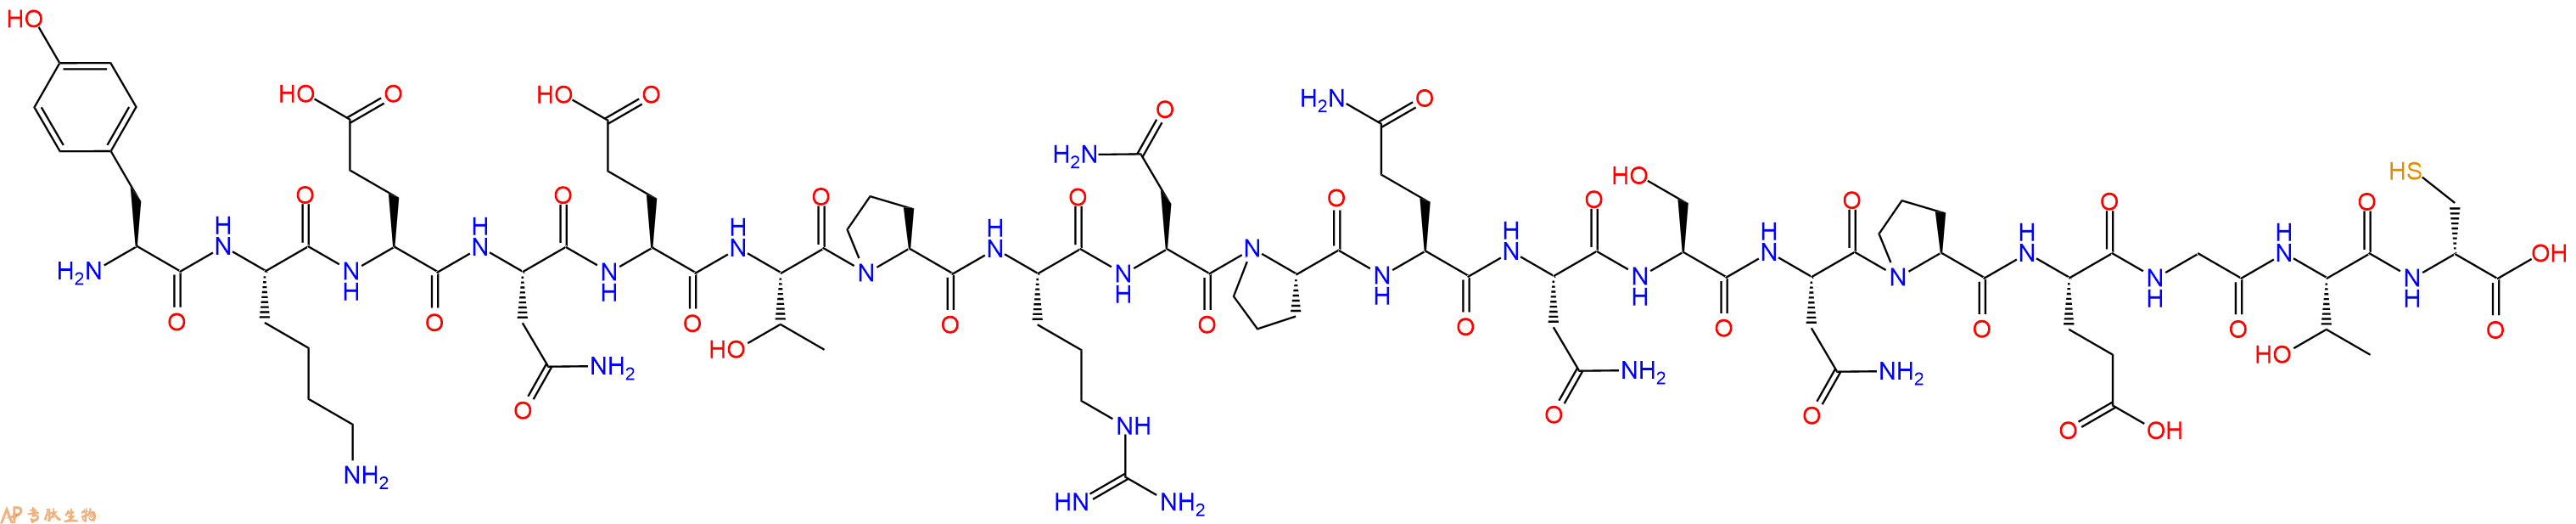 专肽生物产品十九肽YKENETPRNPQNSNPEGT-DCys